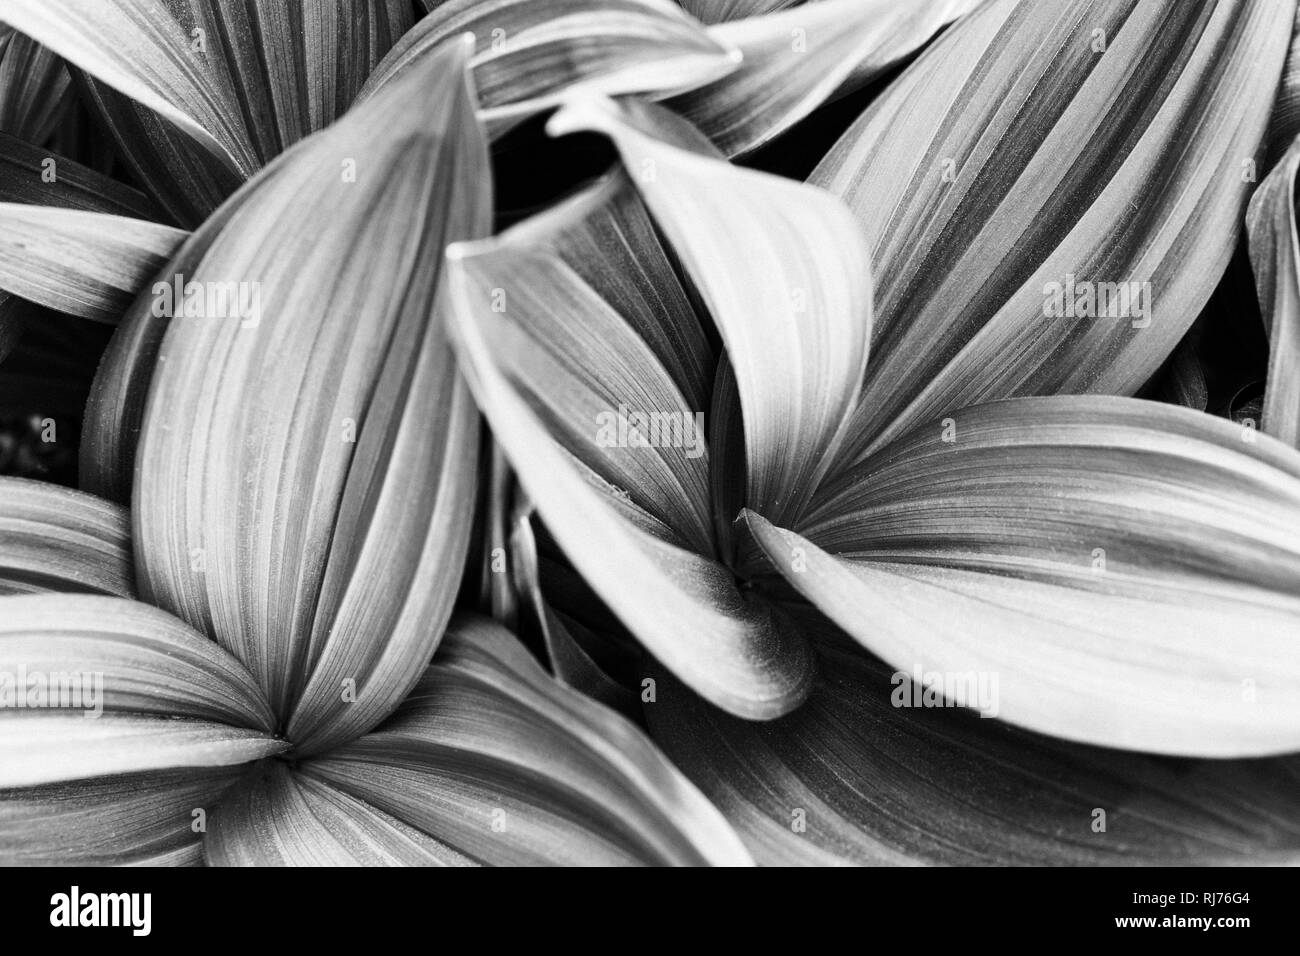 Dans Zierpflanze gestreifte, Blätter, capable, dans Graustufen Hintergrund, Banque D'Images